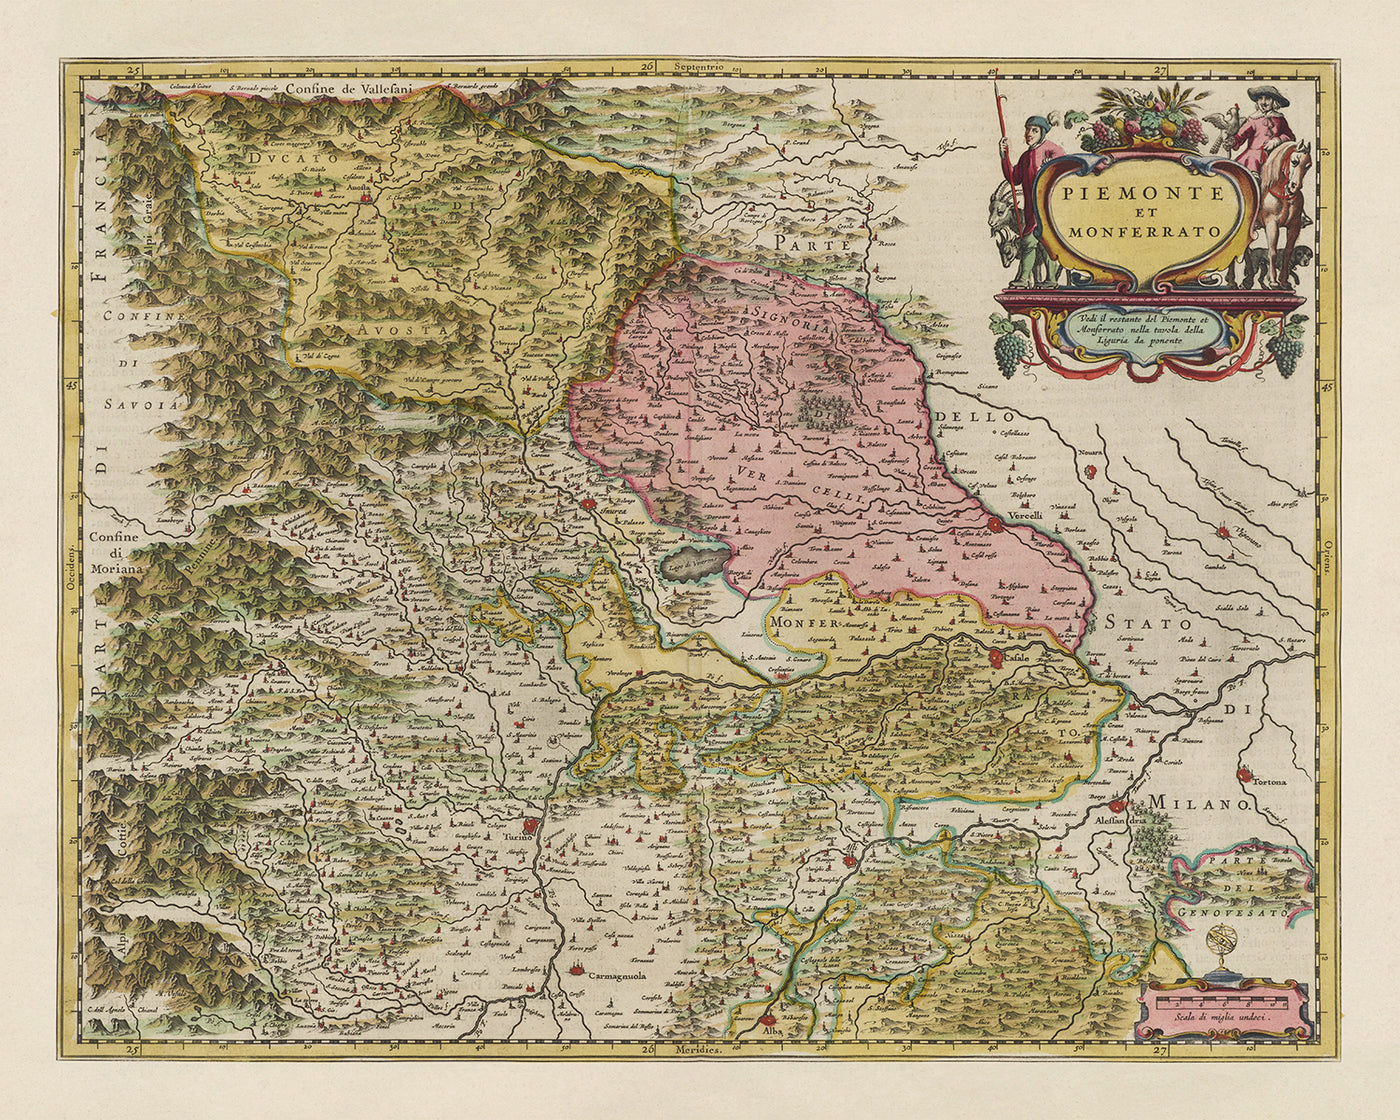 Alte Karte von Piemont und Monferrato, Italien von Joan Blaeu, 1665: Turin, Alessandria, Asti, Casale Monferrato, Vercelli